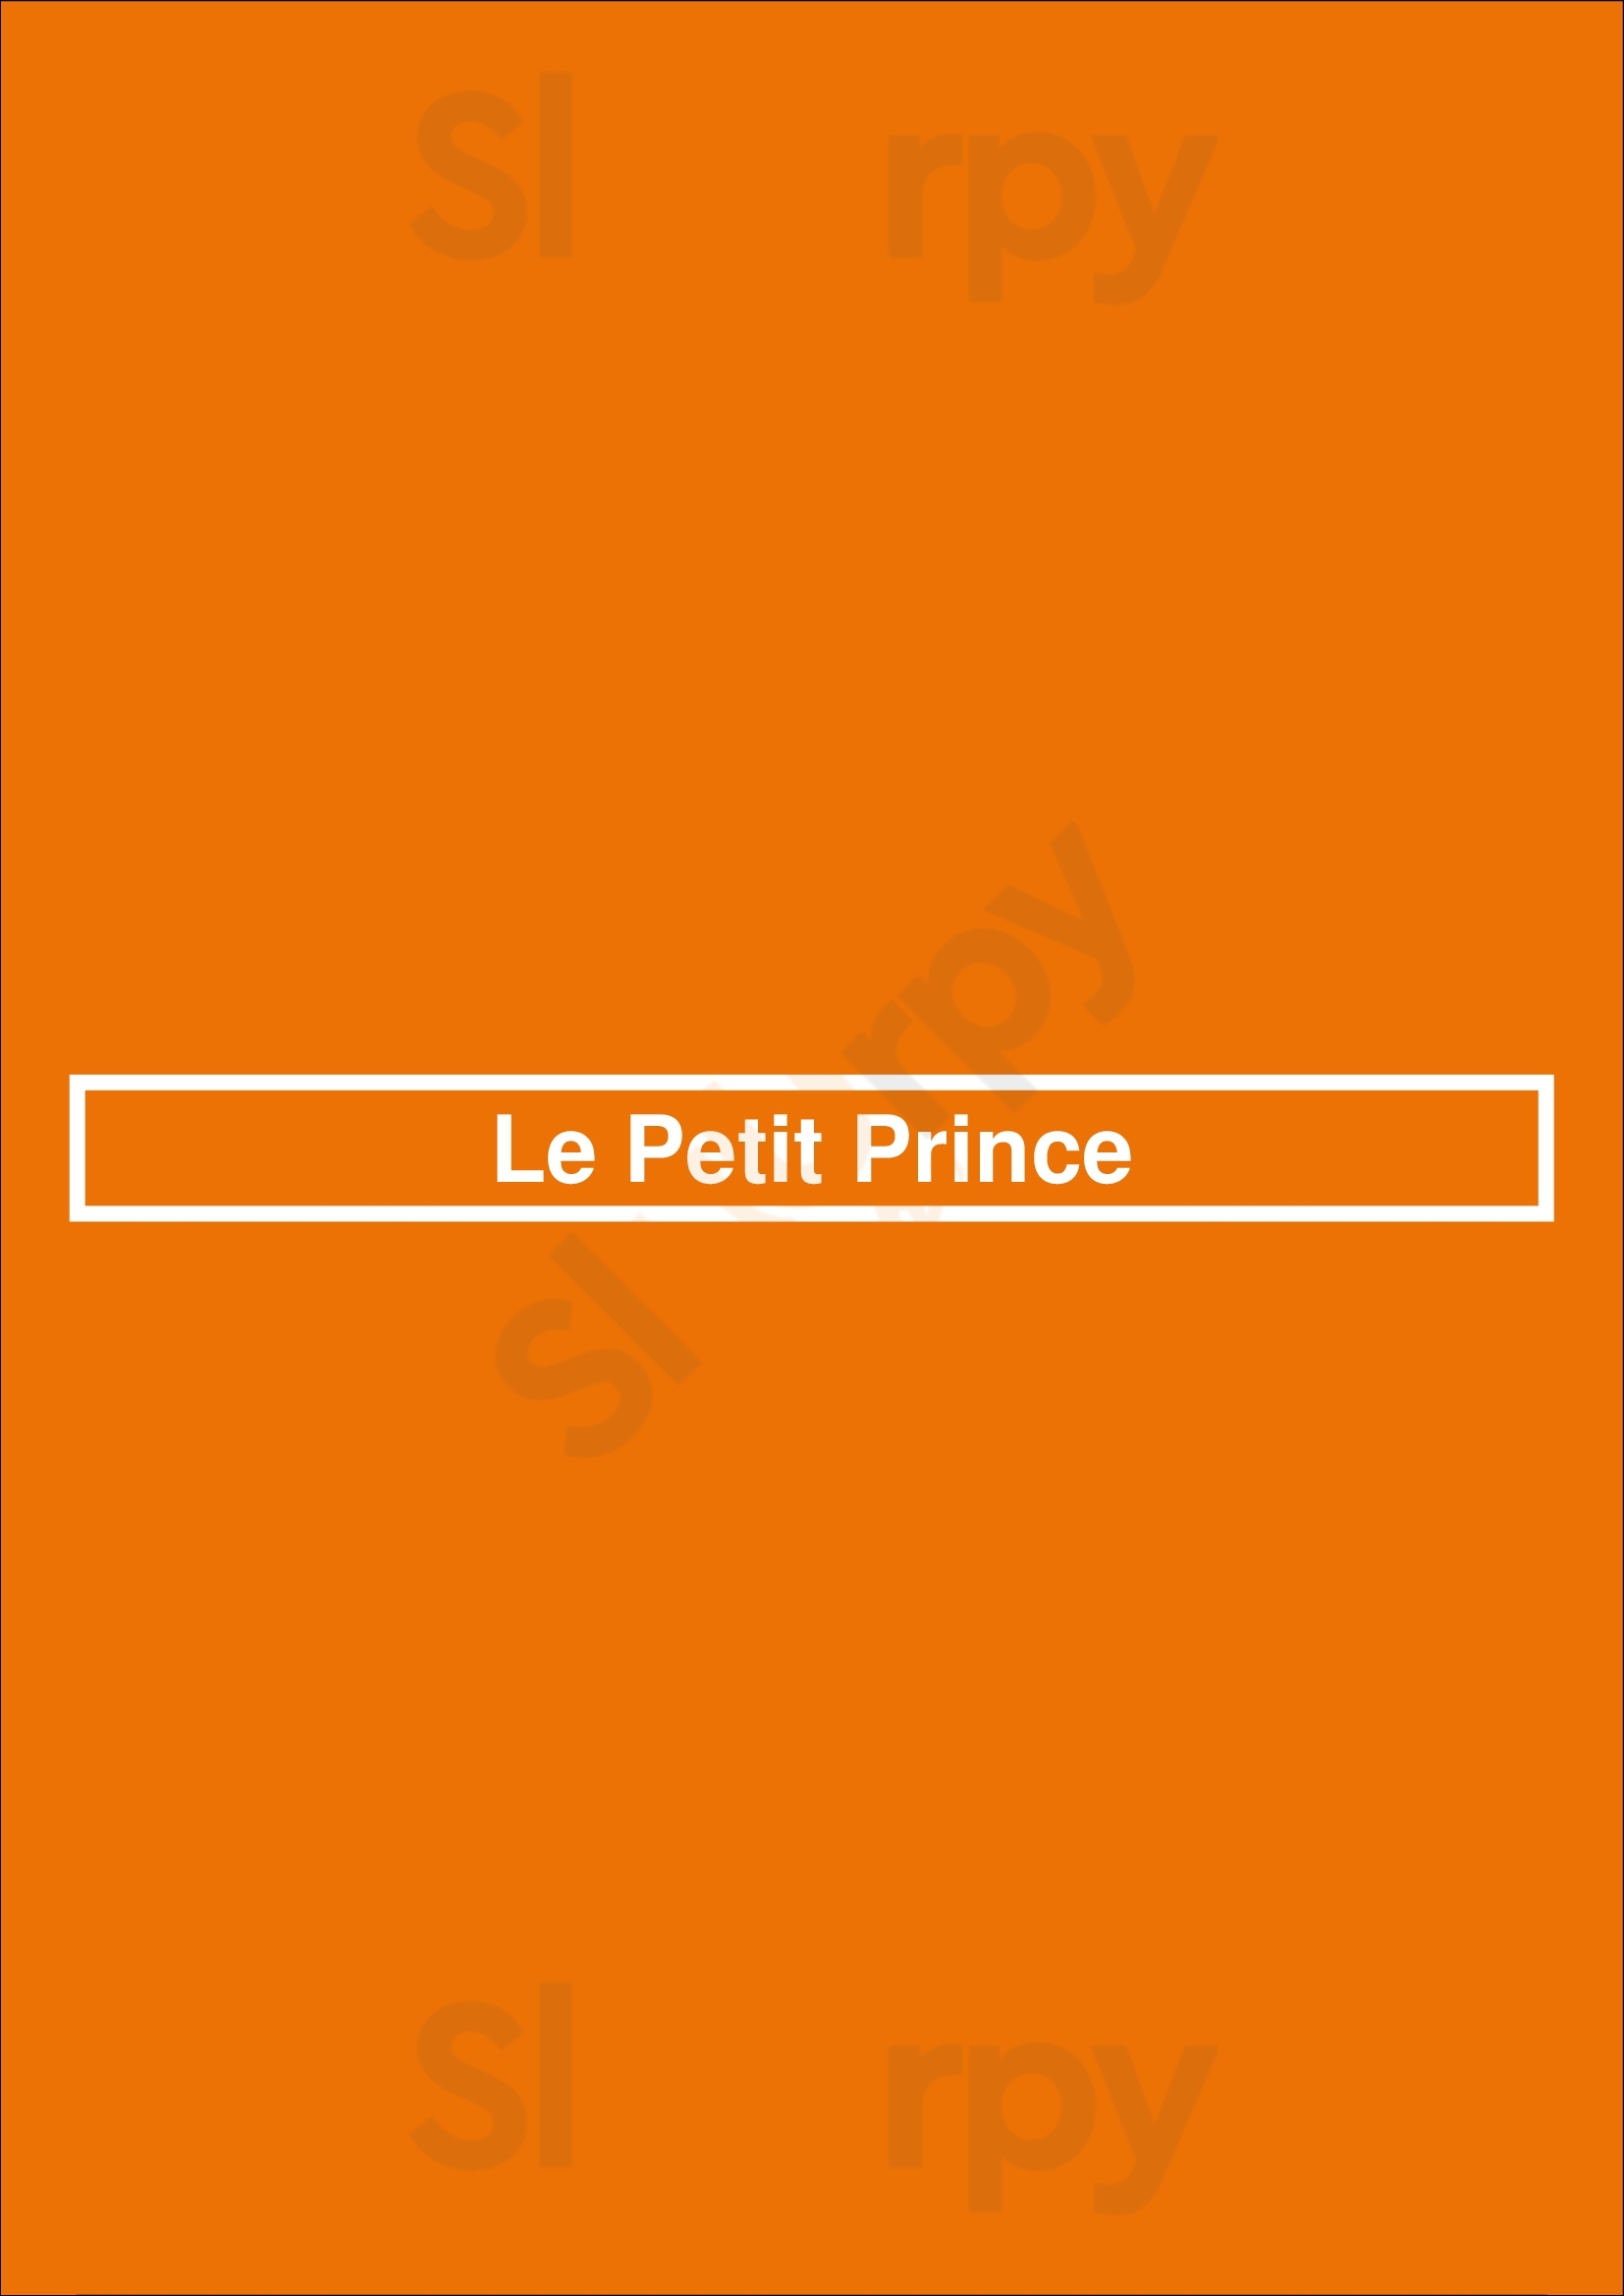 Le Petit Prince Madrid Menu - 1